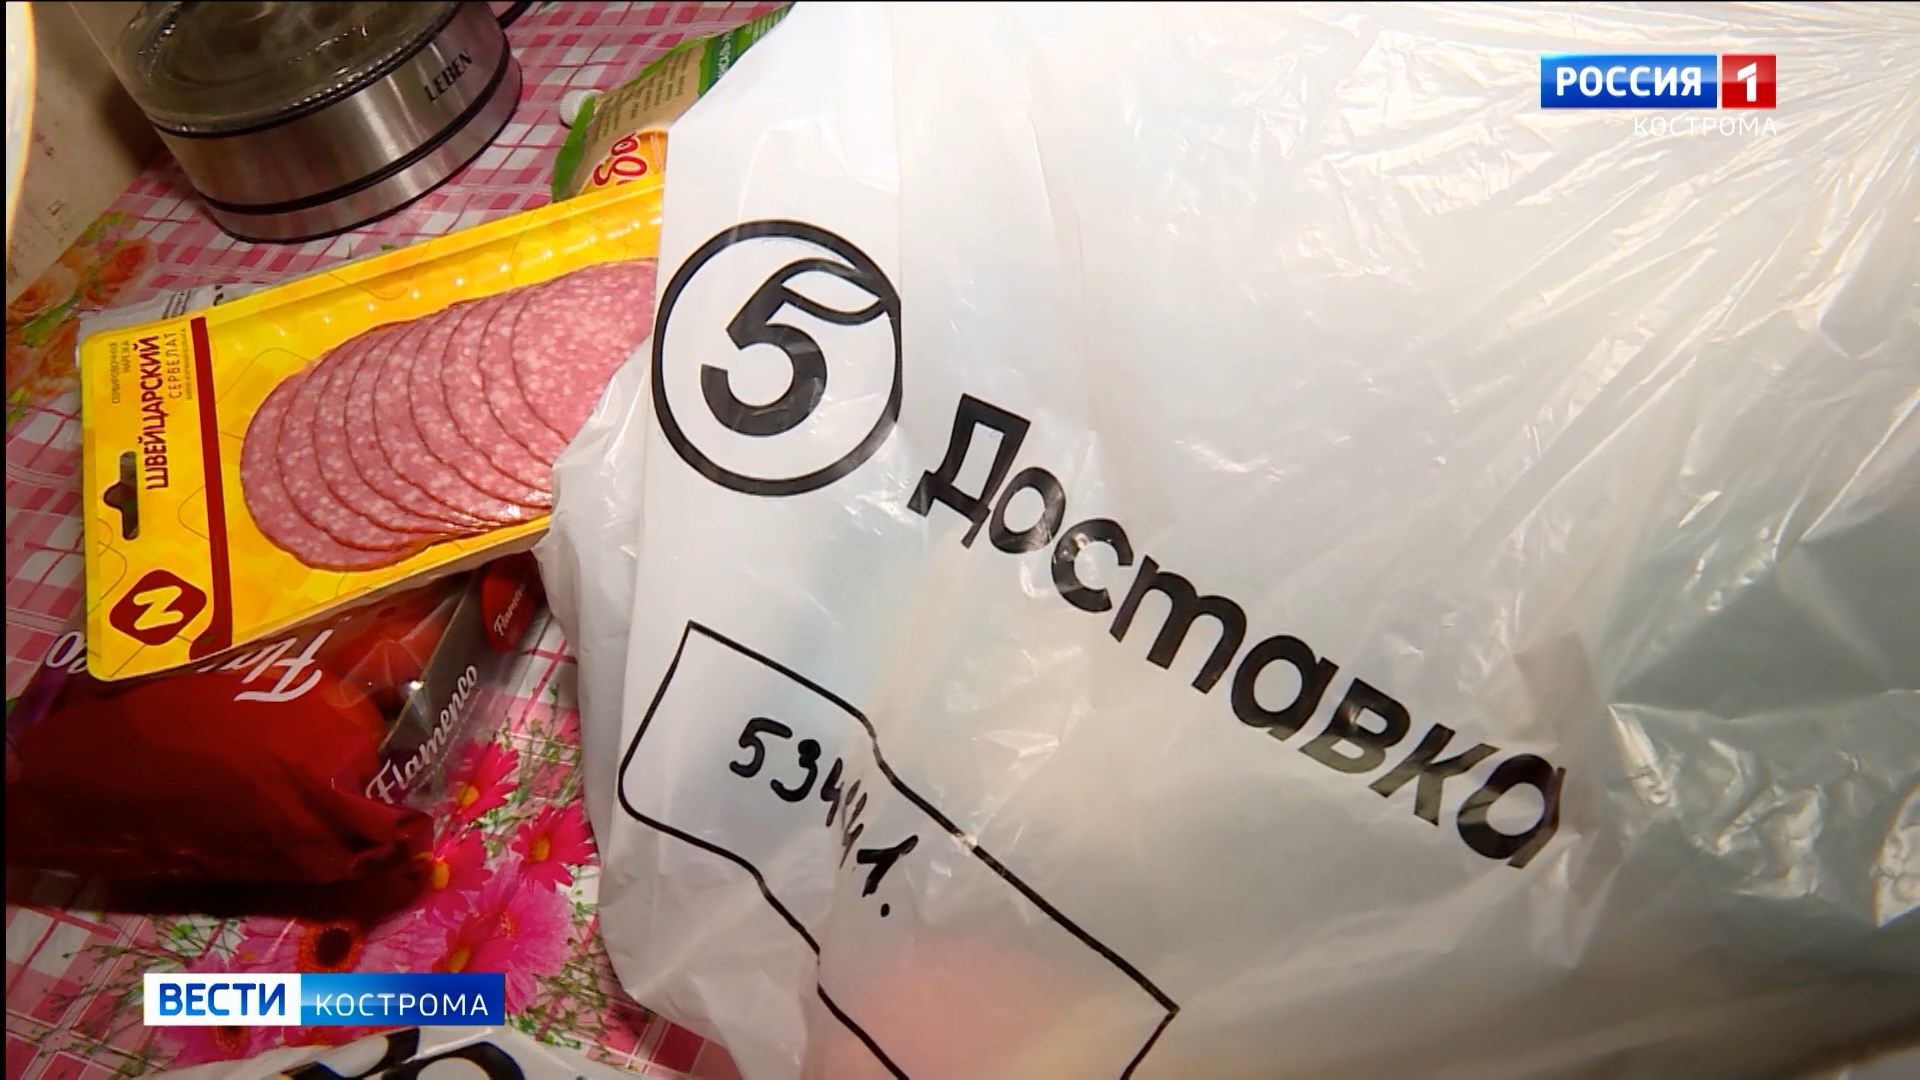 Экспресс-доставка от сети магазинов «Пятёрочка» стала доступна для жителей Костромы